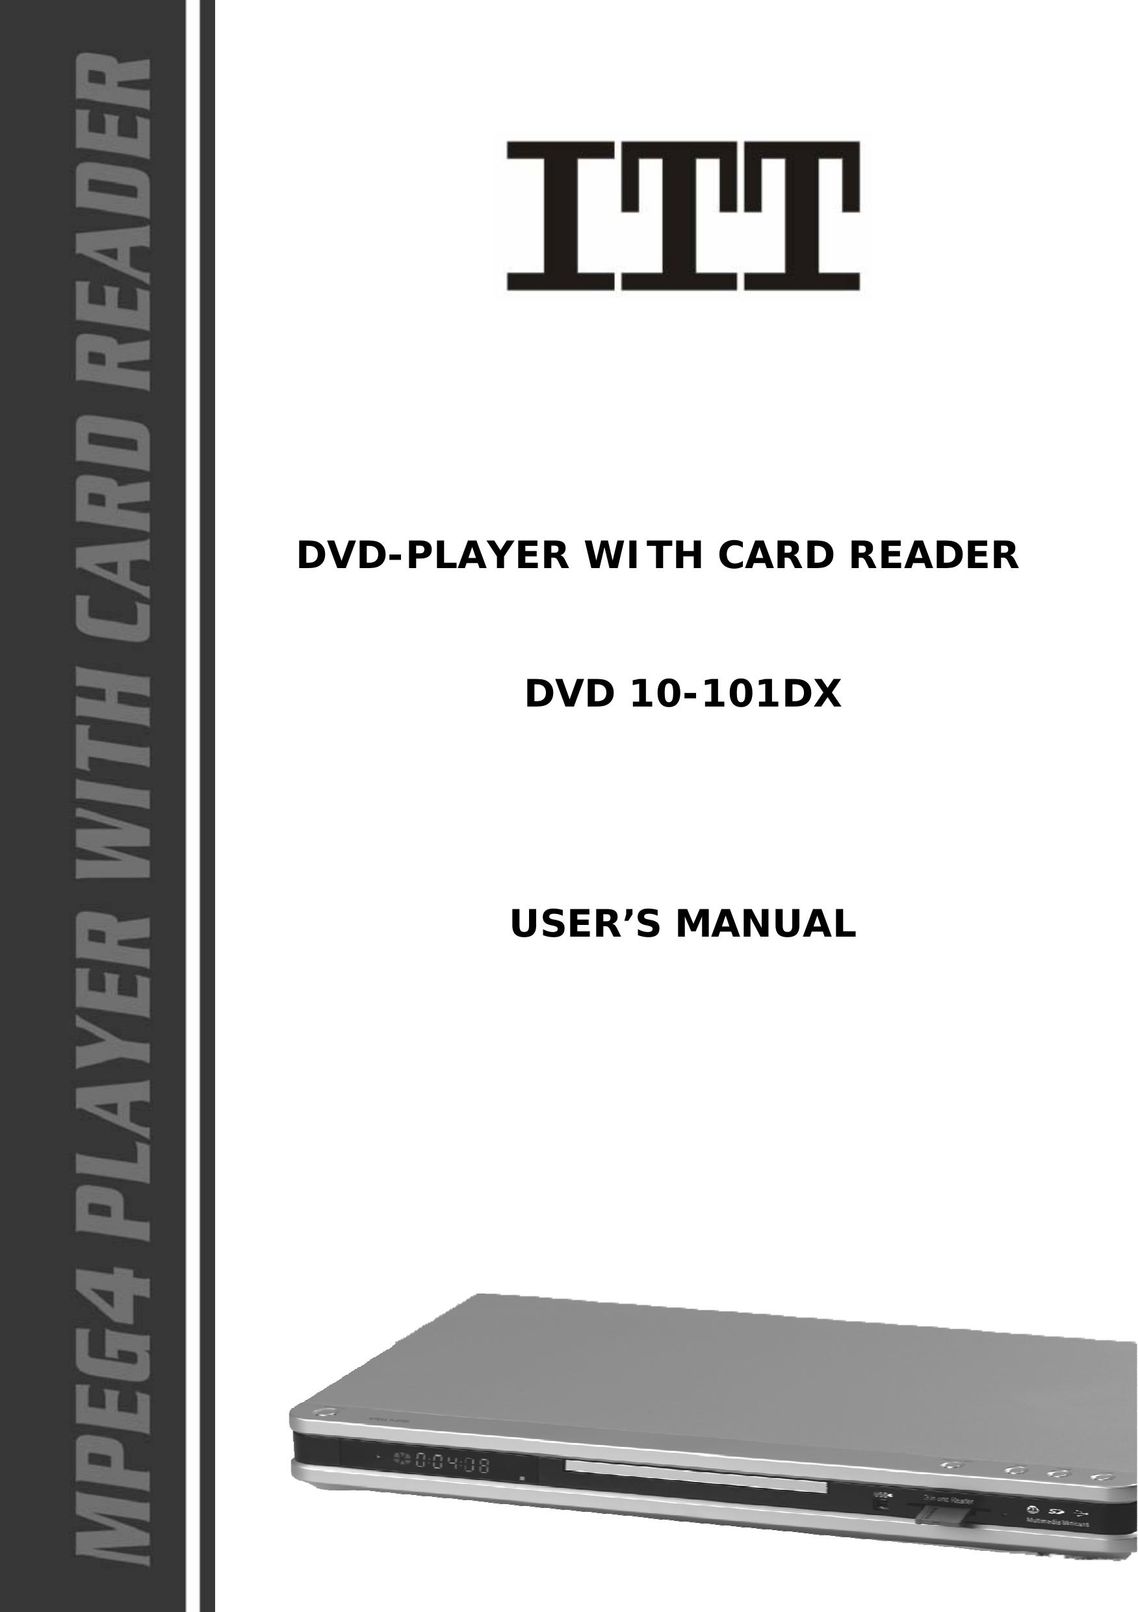 ITT DVD 10-101DX DVD Player User Manual